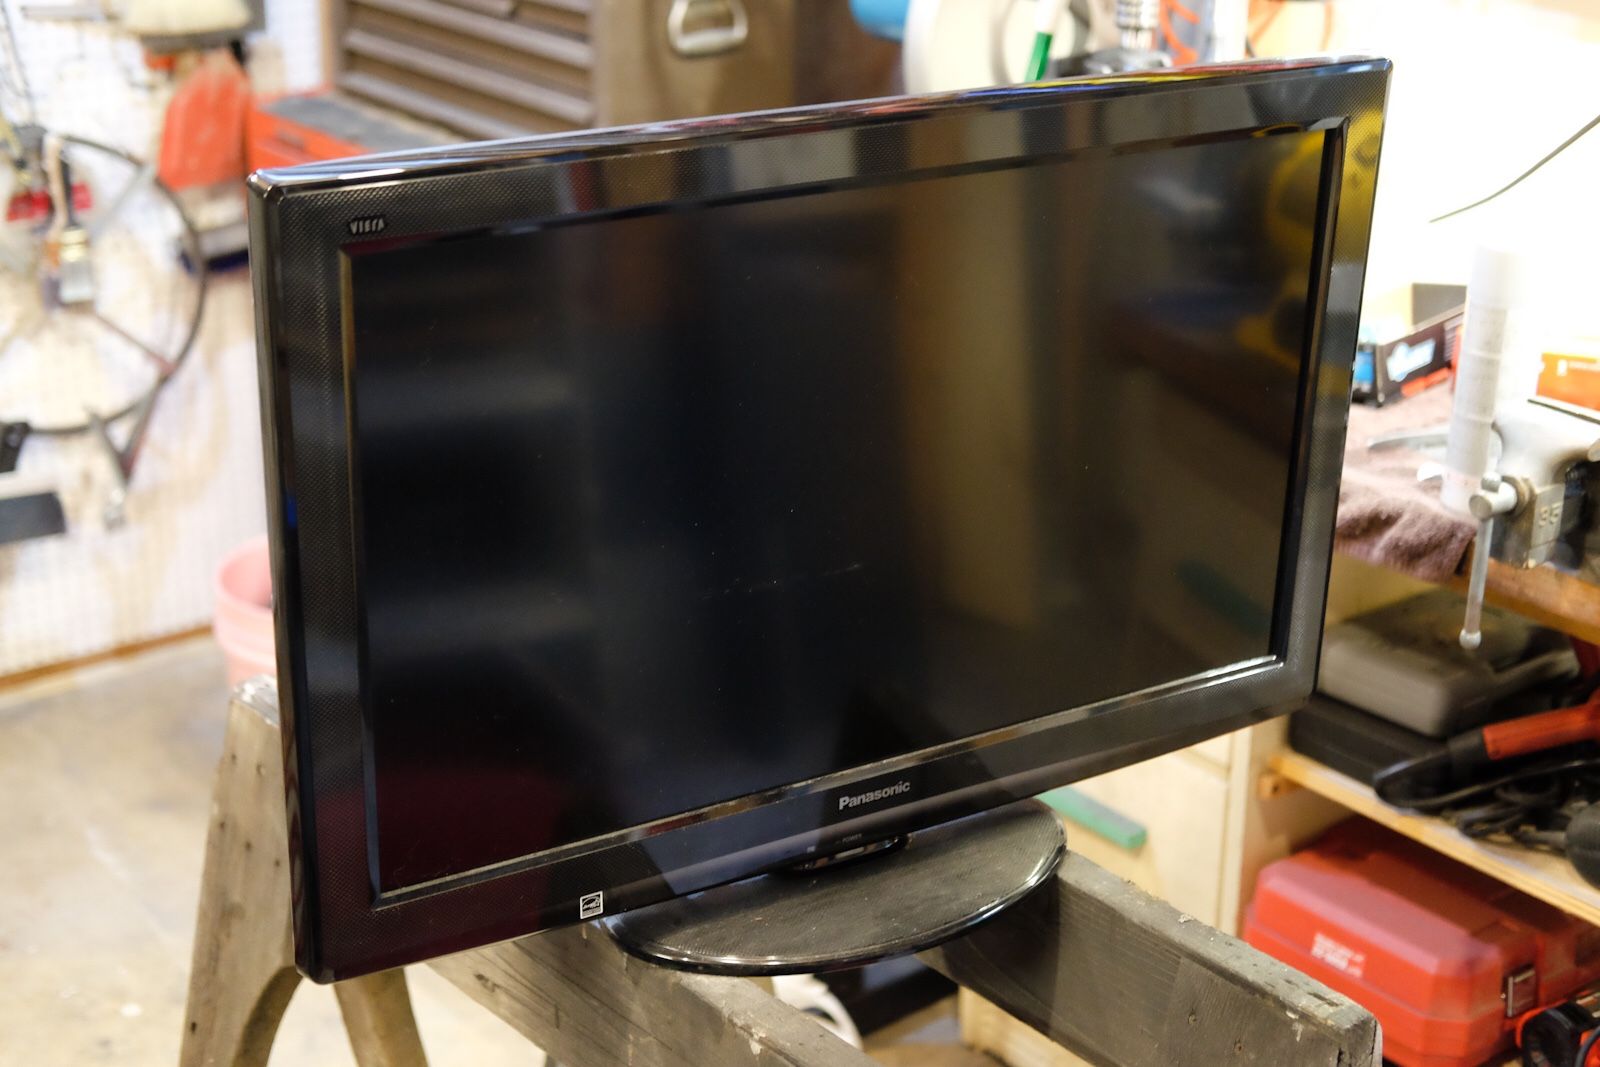 Panasonic 32” LCD television